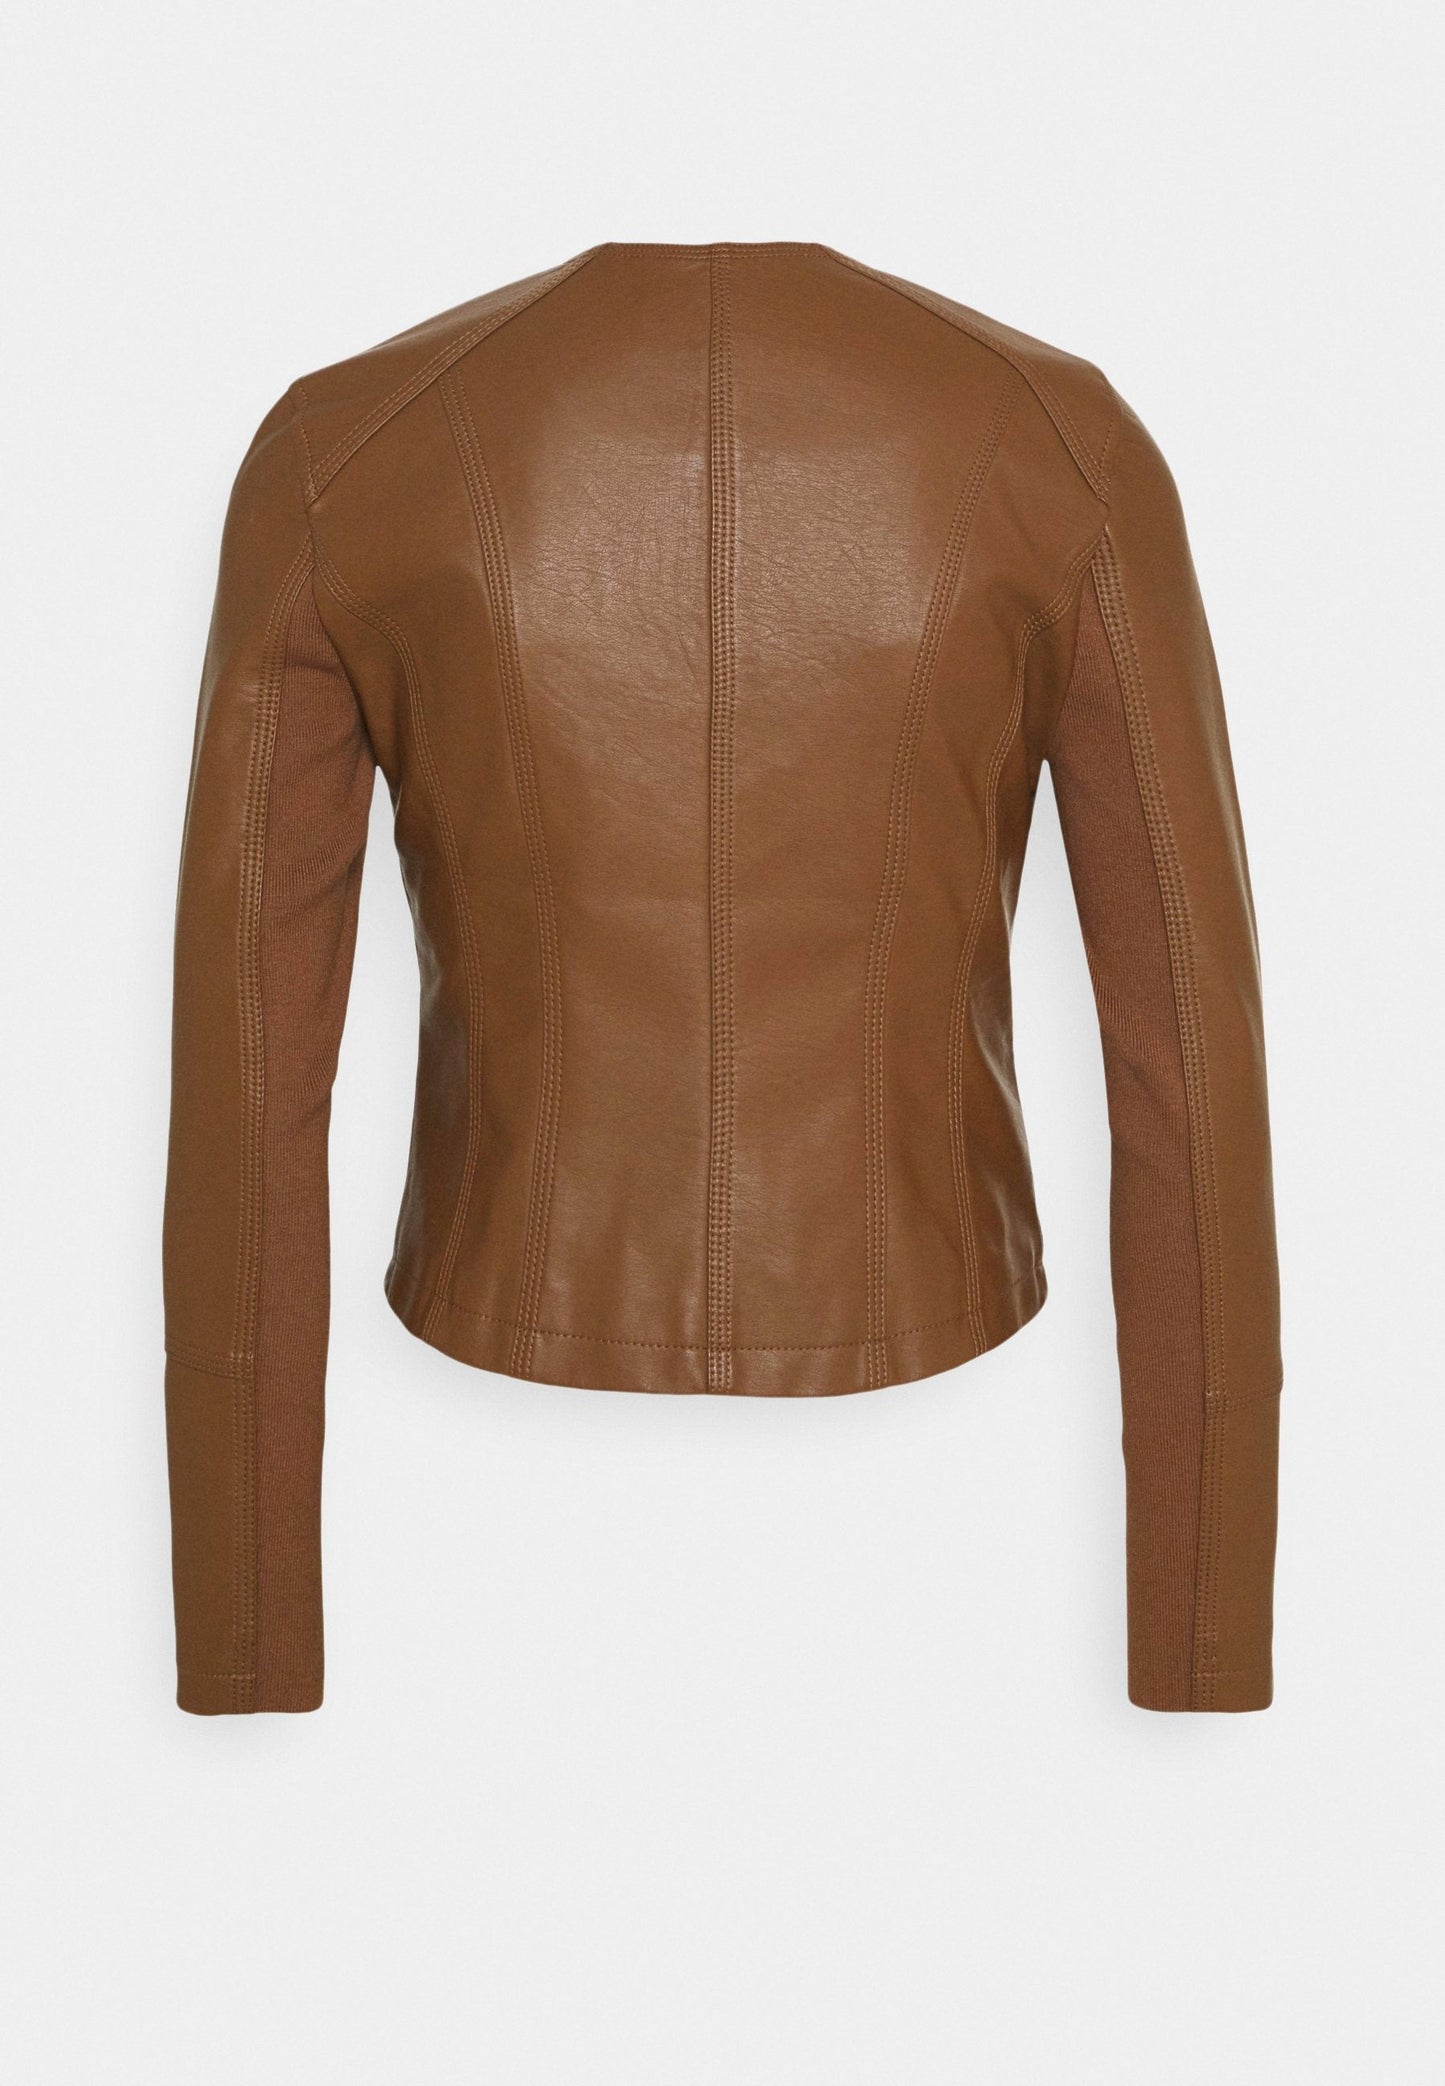 Women's Tan Brown Leather Biker Jacket